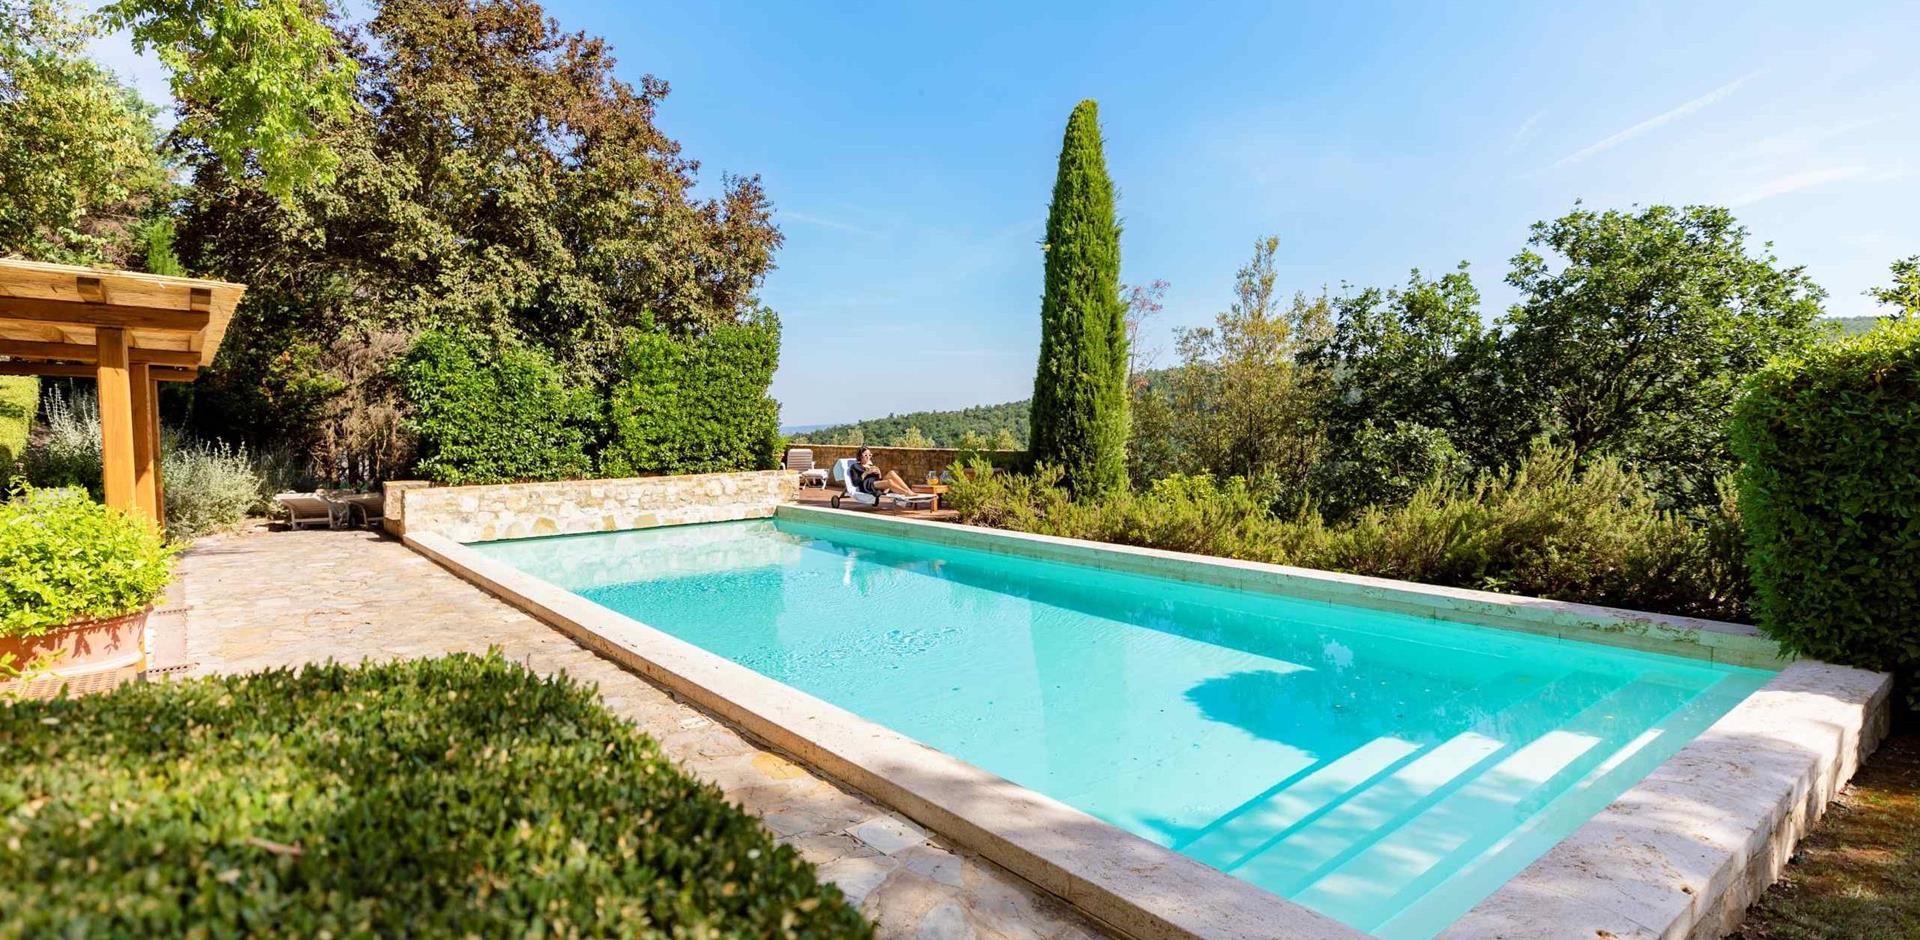 Pool area, Castello di Fighine – Villa Gioia, Tuscany, Italy, Europe